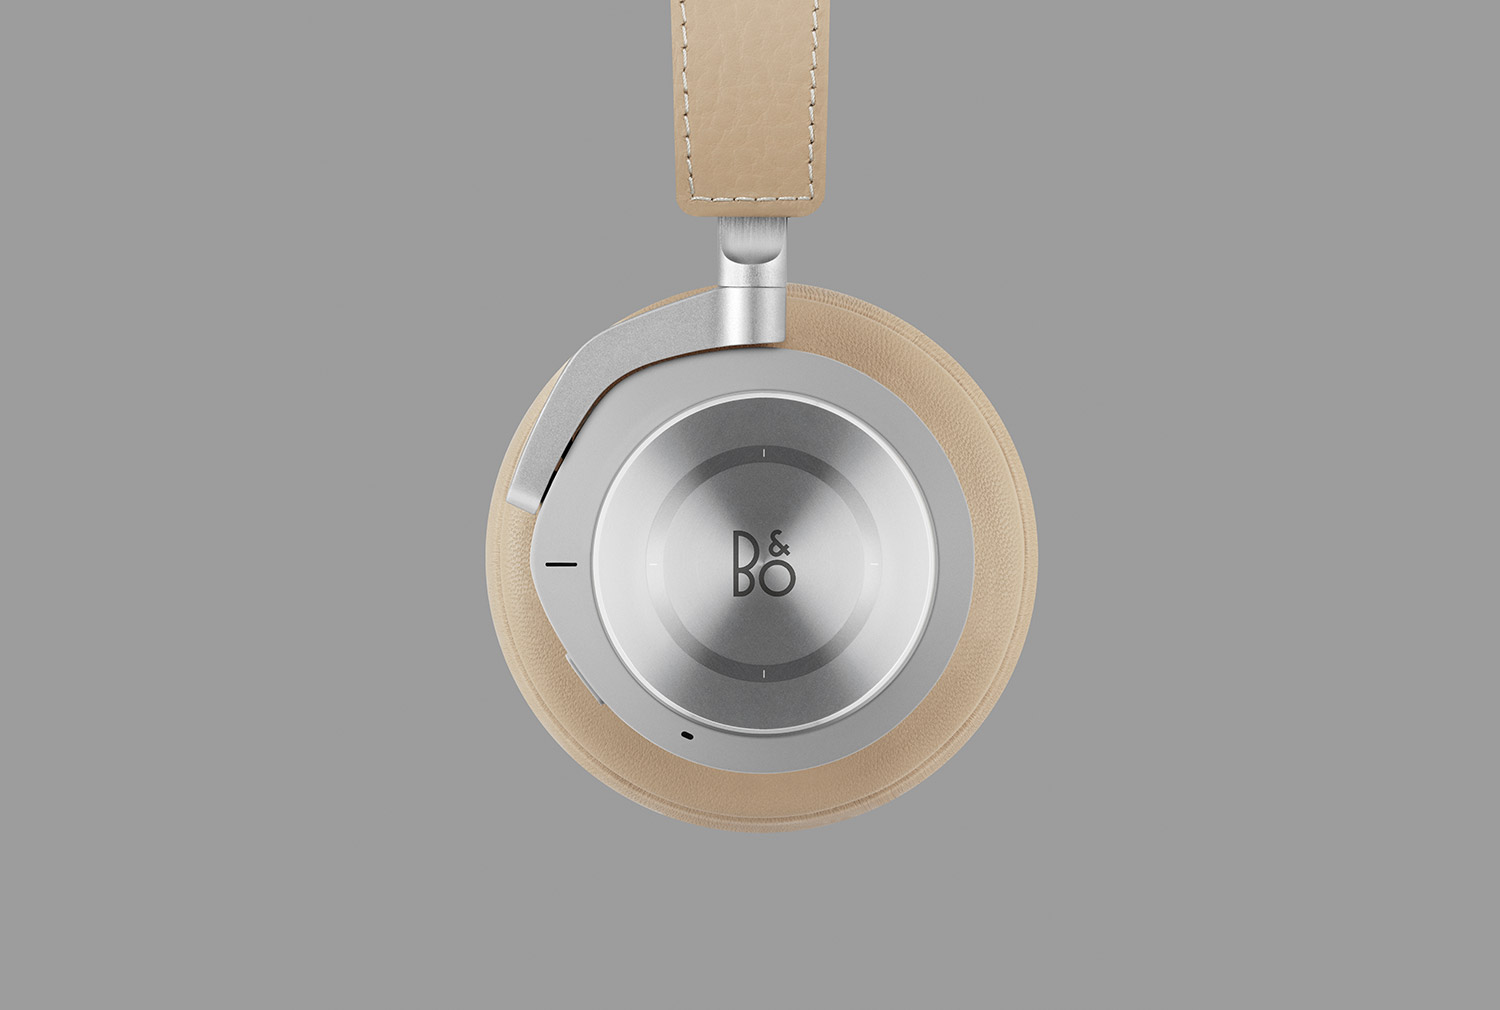 Bang & Olufsen Headphones